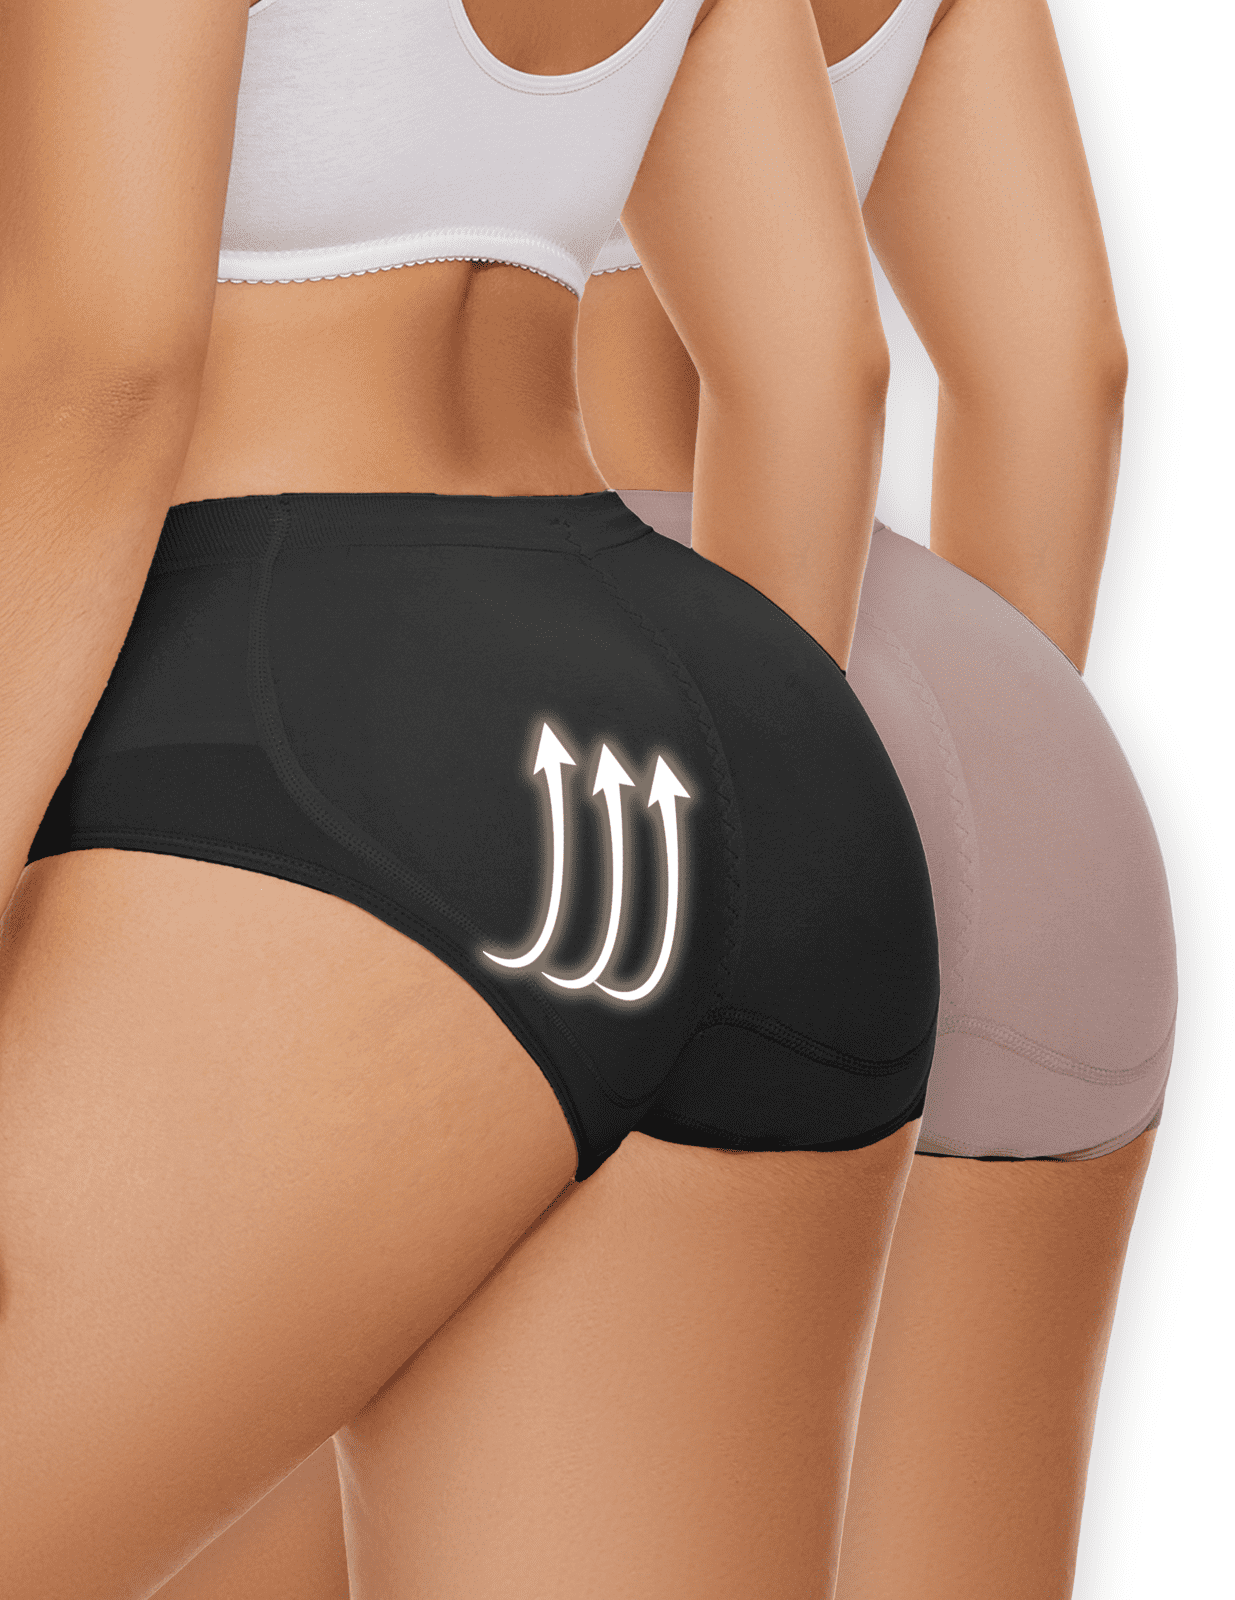 Lilvigor Padded Butt Lifter Shaper Hip Enhancer Shapewear Control Knickers  High Waist Women BBL Shorts Sexy Curvy